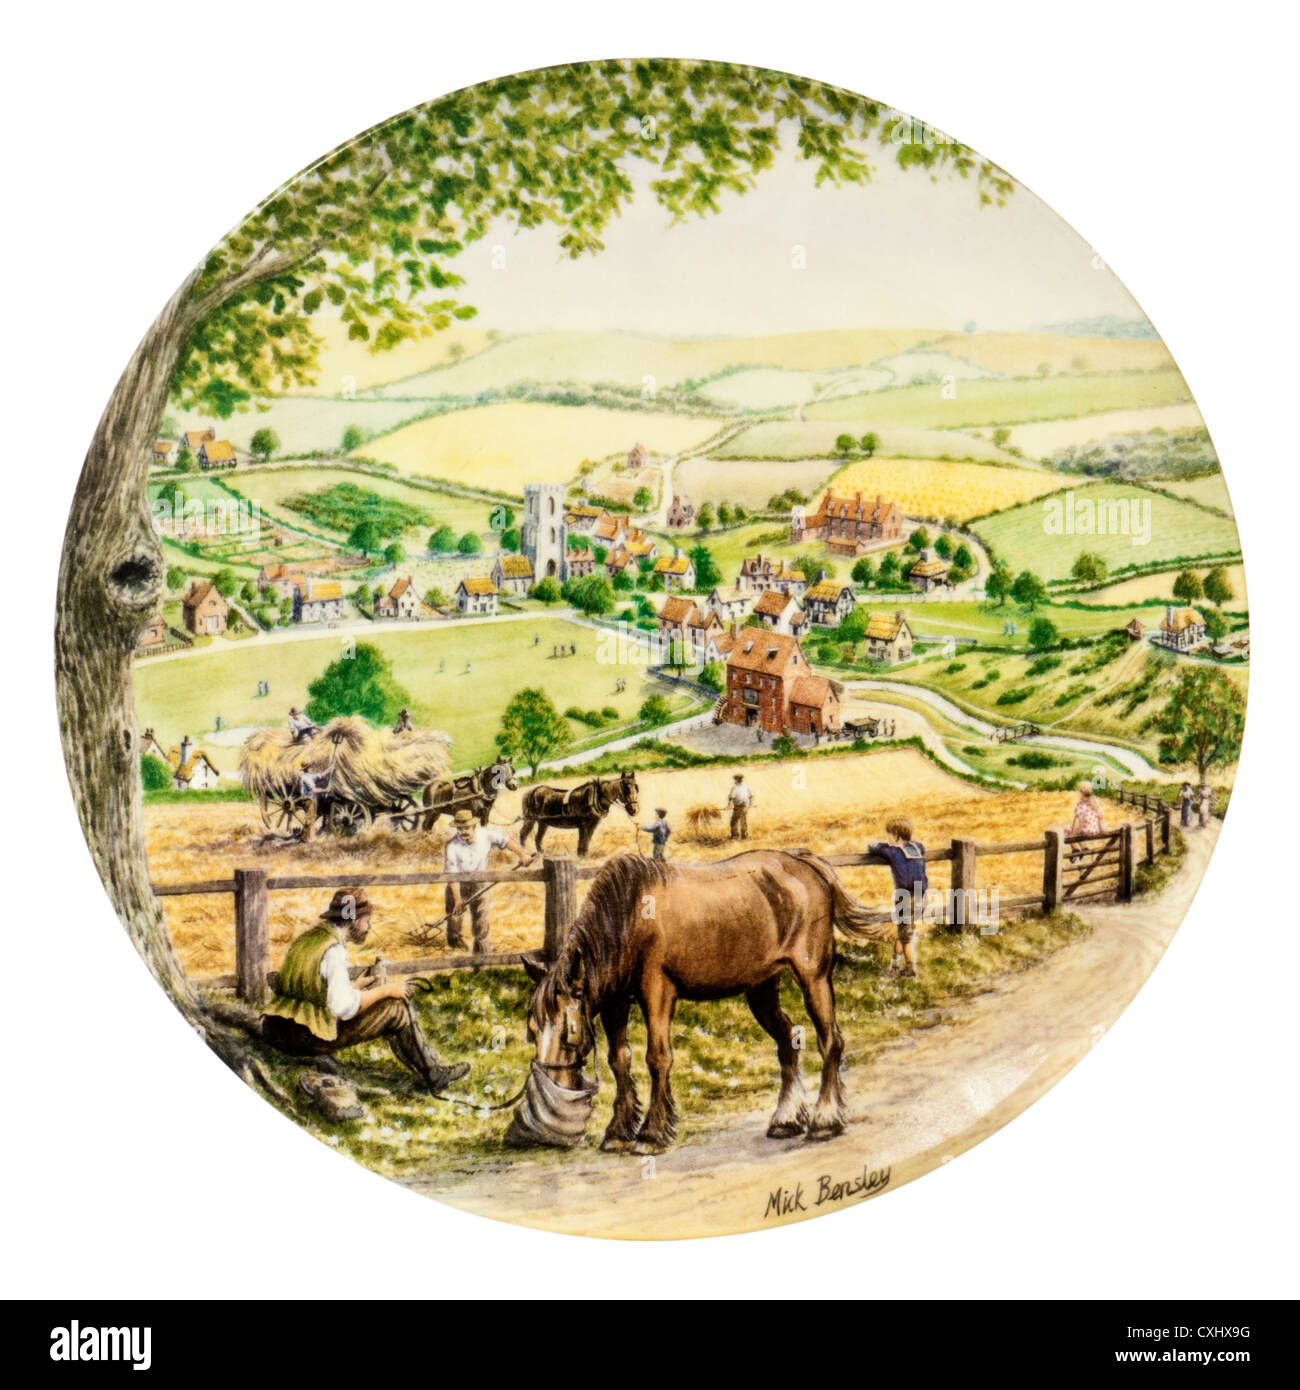 Royal Doulton porcelaine plaque de collecteur - ilnsey "BECK", une question finale (9e) dans le "Voyage à travers le village jusqu'à des séries de Banque D'Images